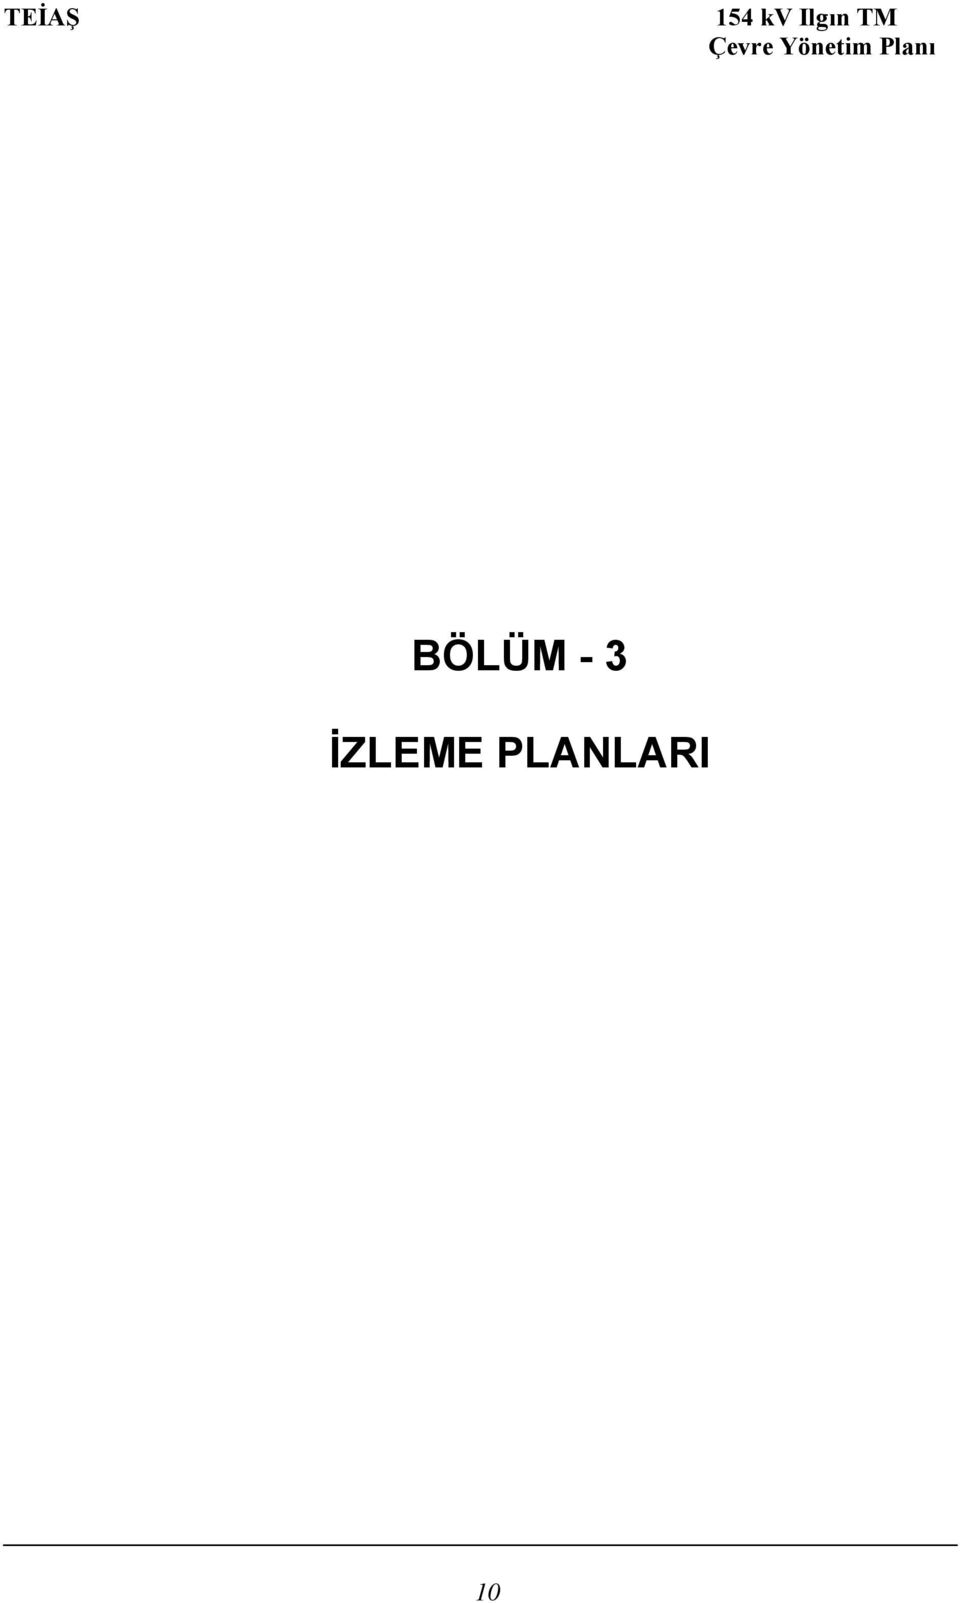 BÖLÜM - 3